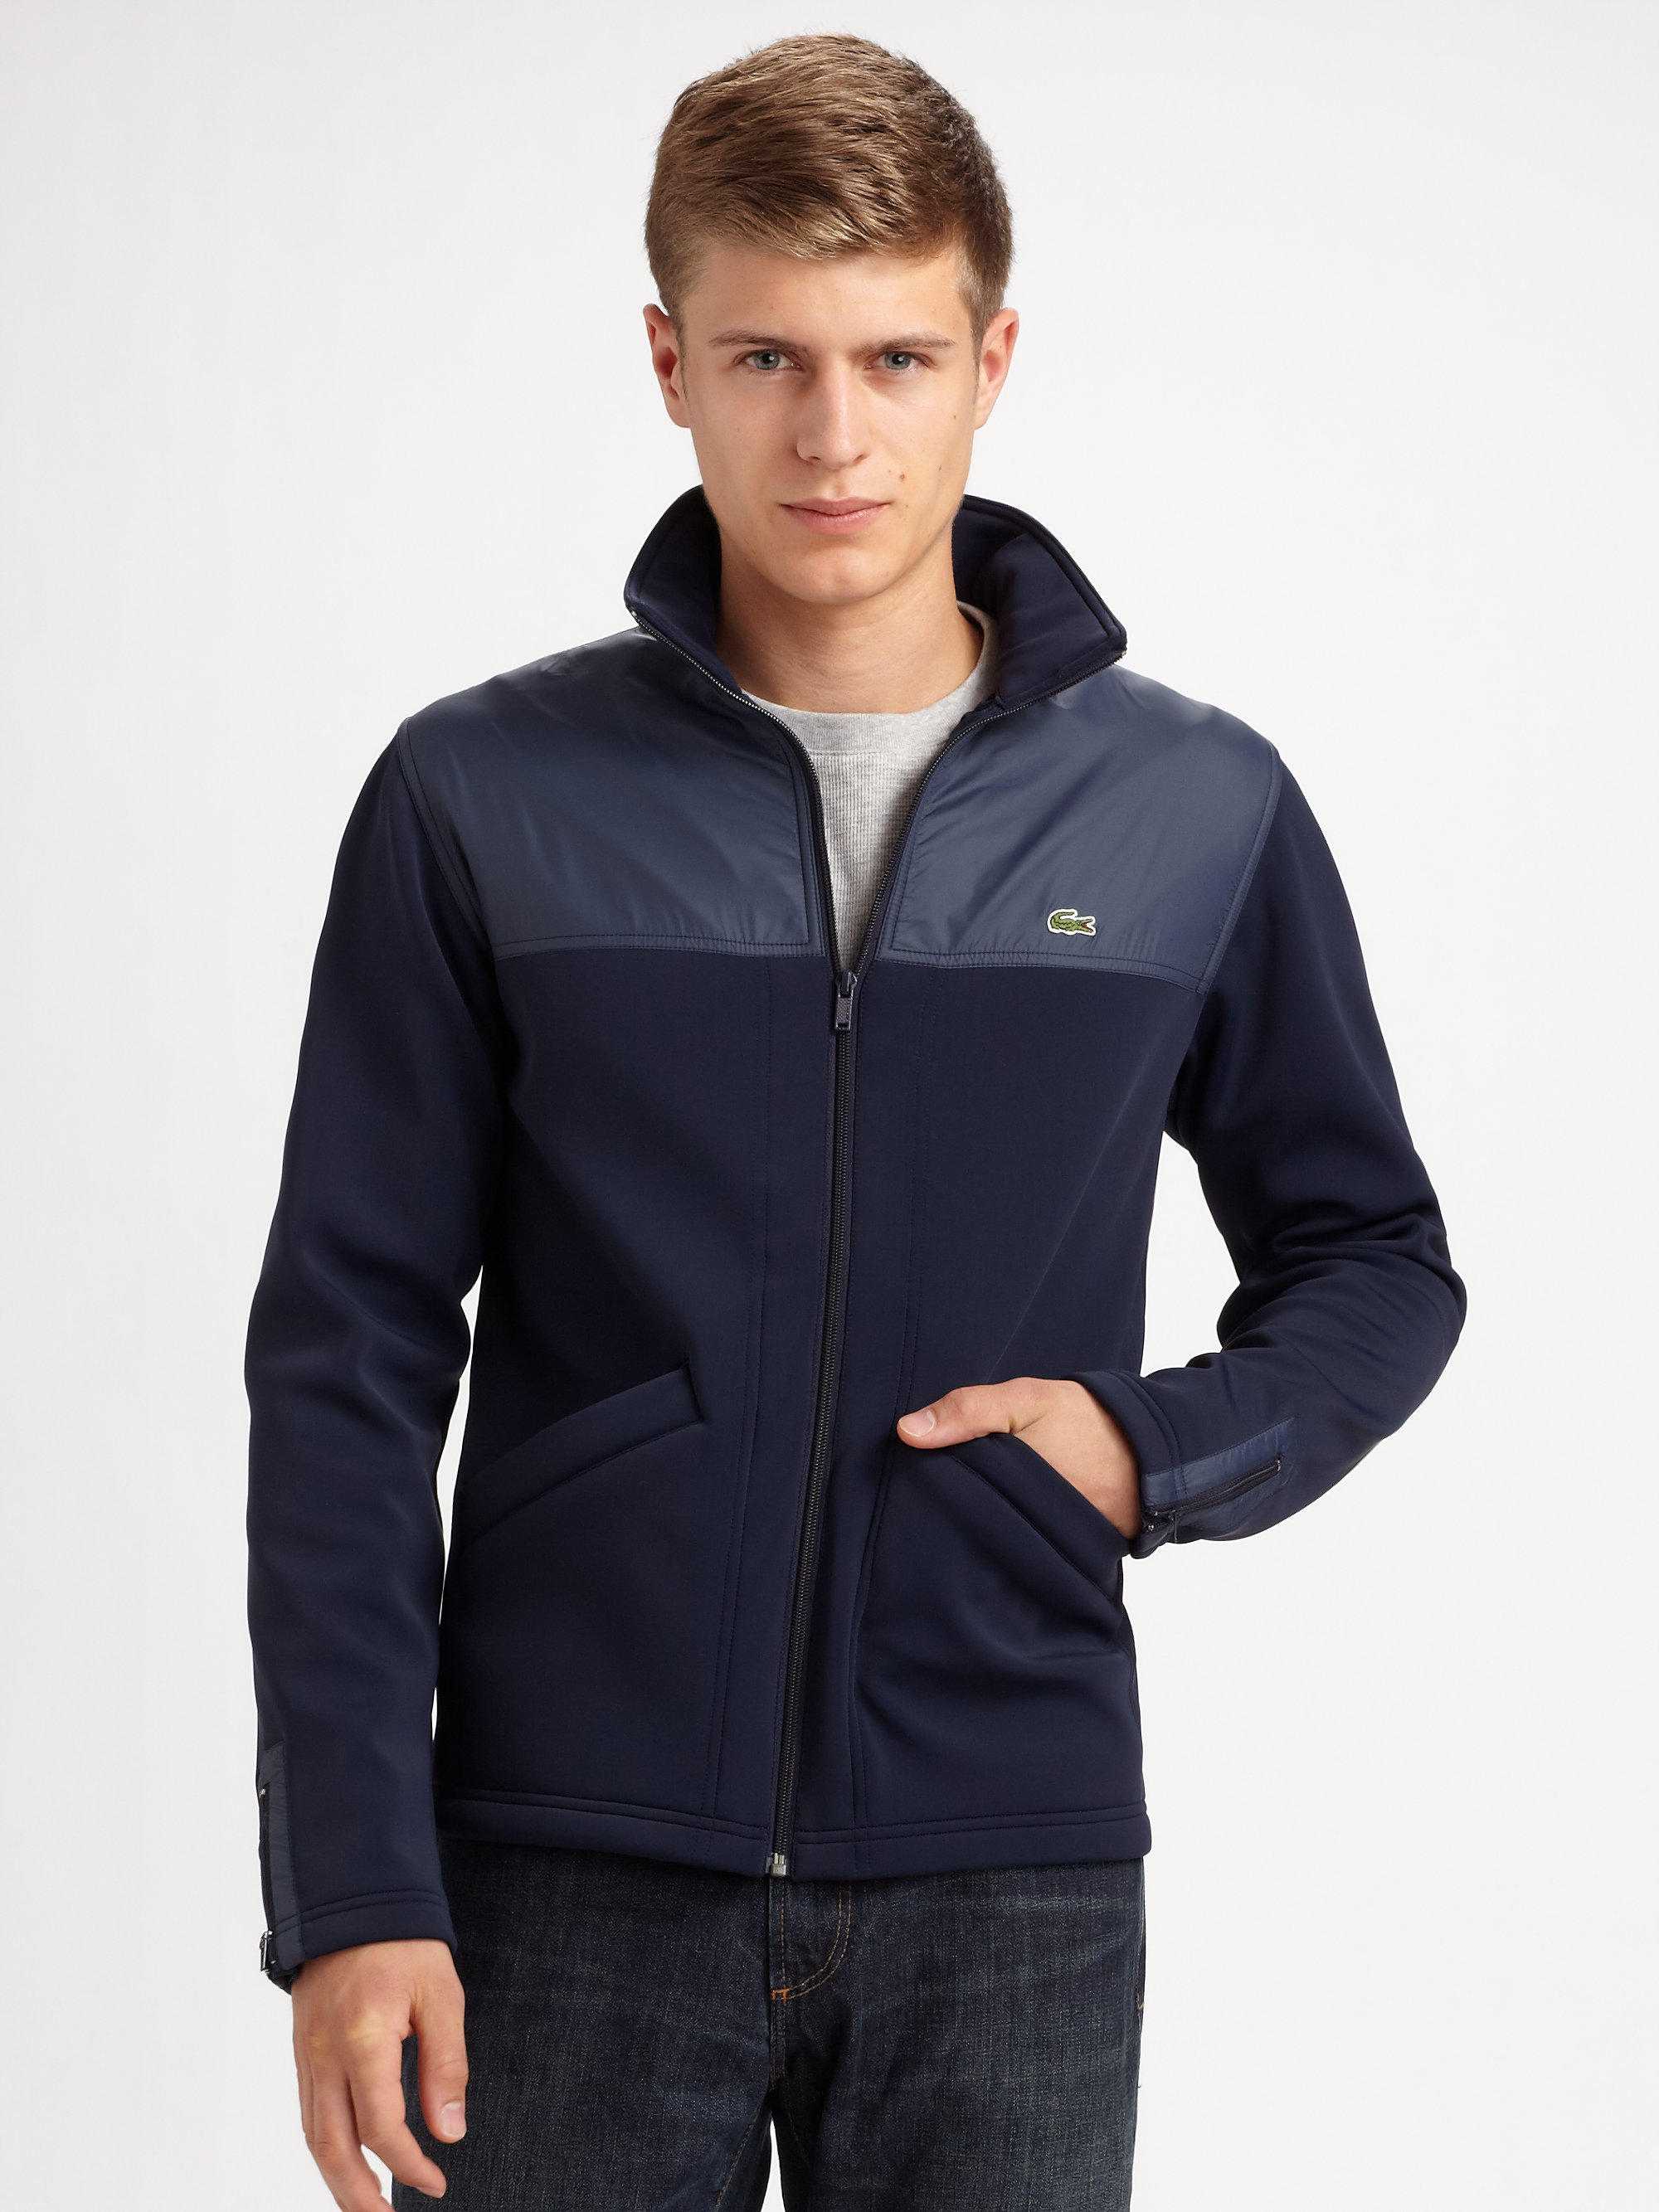 Lacoste Fleece Jacket in Navy (Blue) for Men - Lyst